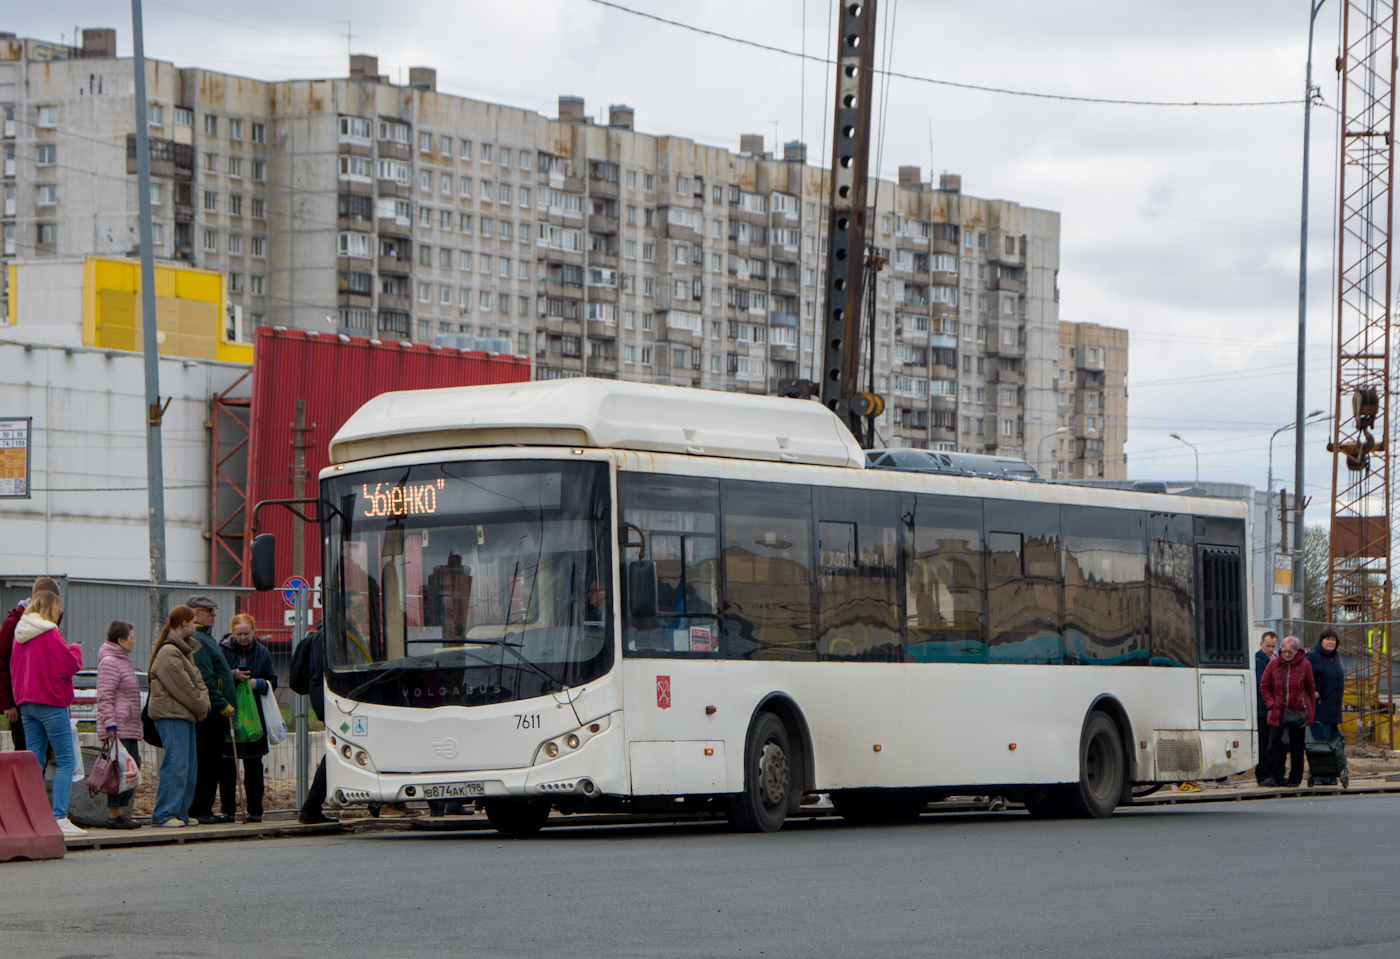 Sankt Petersburg, Volgabus-5270.G0 Nr. 7611